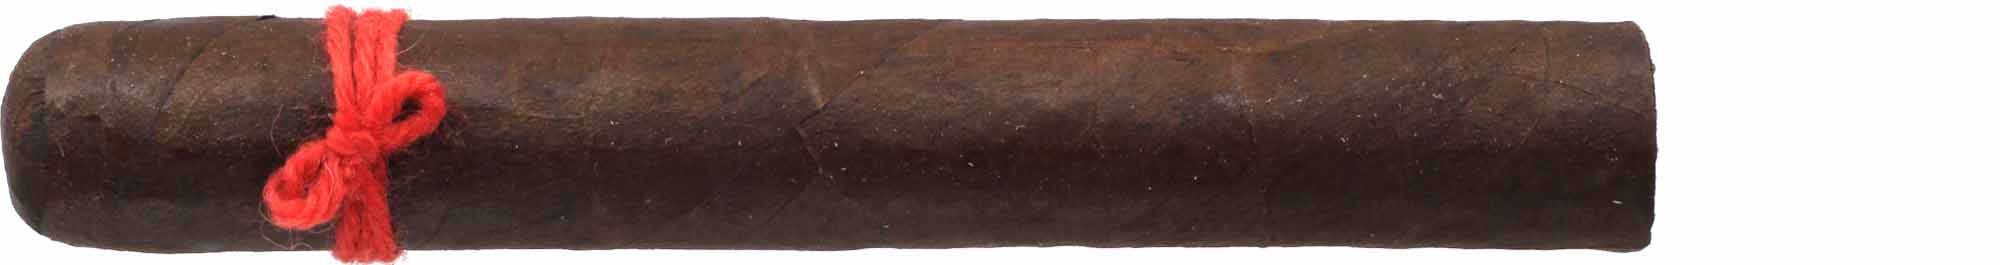 Furia Zigarren Tisiphone (orangener Faden)